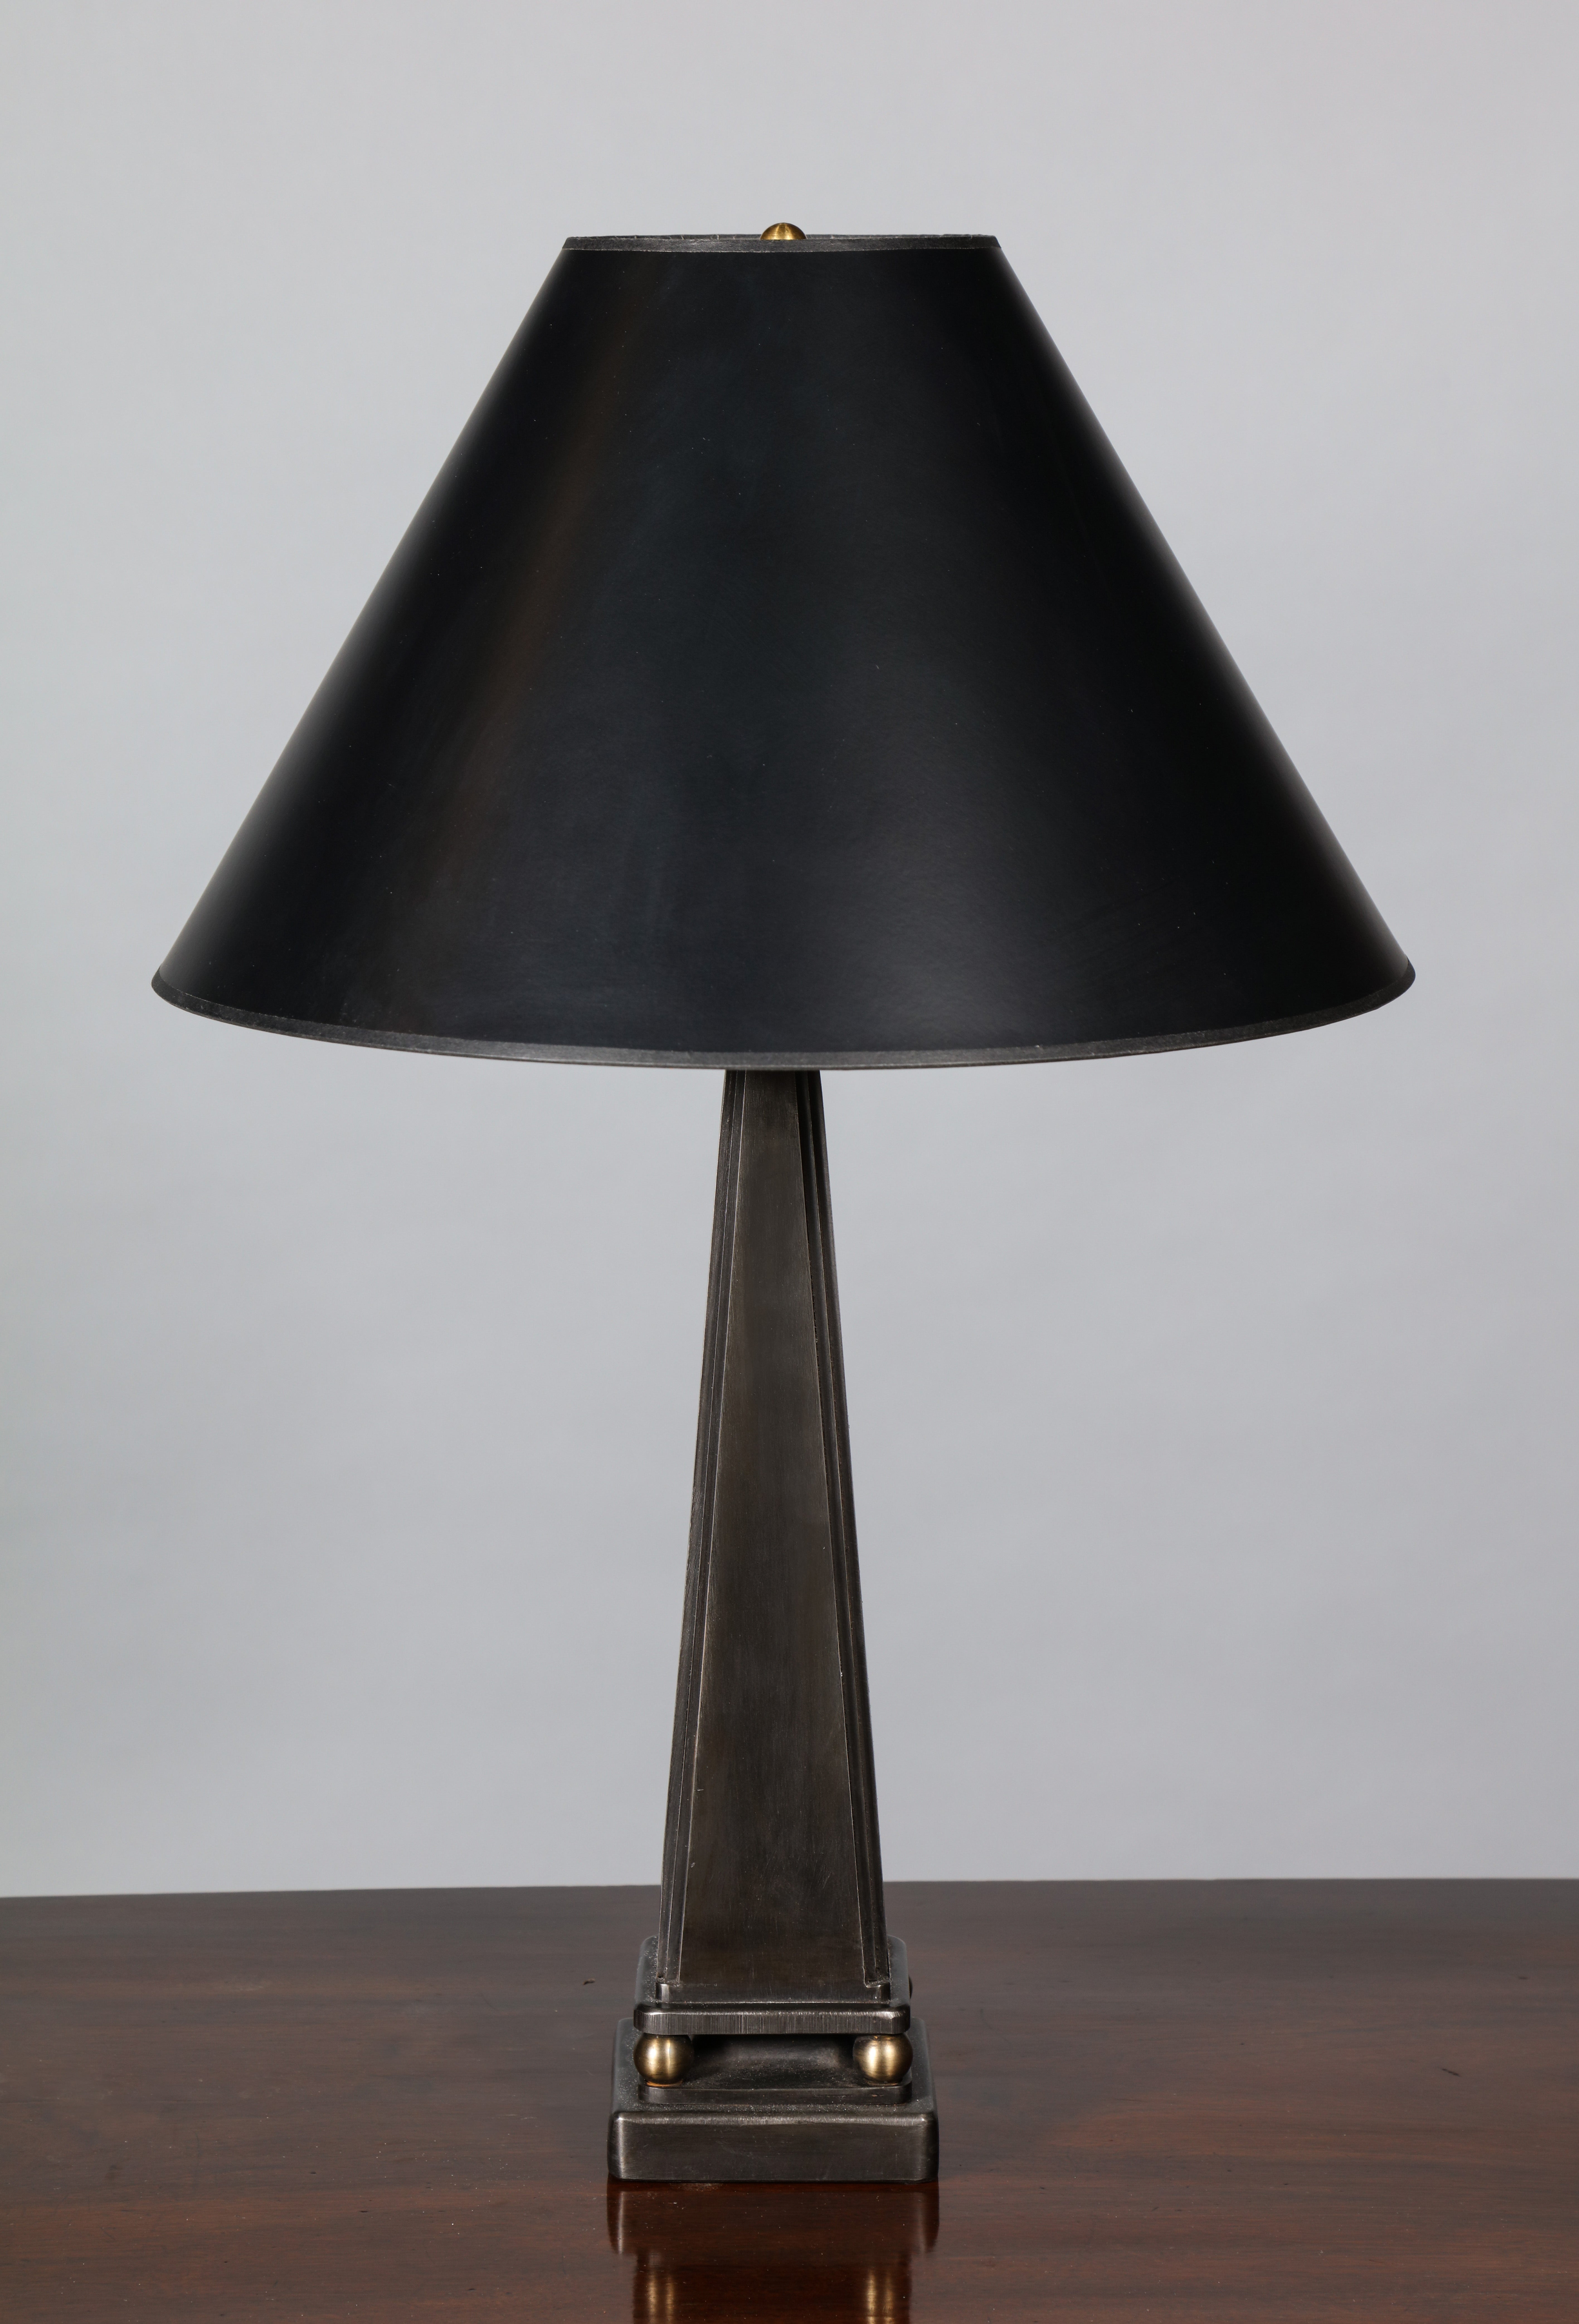 Lampe de table en acier fabriquée à la main, de forme pyramidale, reposant sur des pieds à boule et sur une plinthe carrée. Le design fait référence à l'esthétique néoclassique française des années 1930 à la fin des années 1940, avec ses cannelures